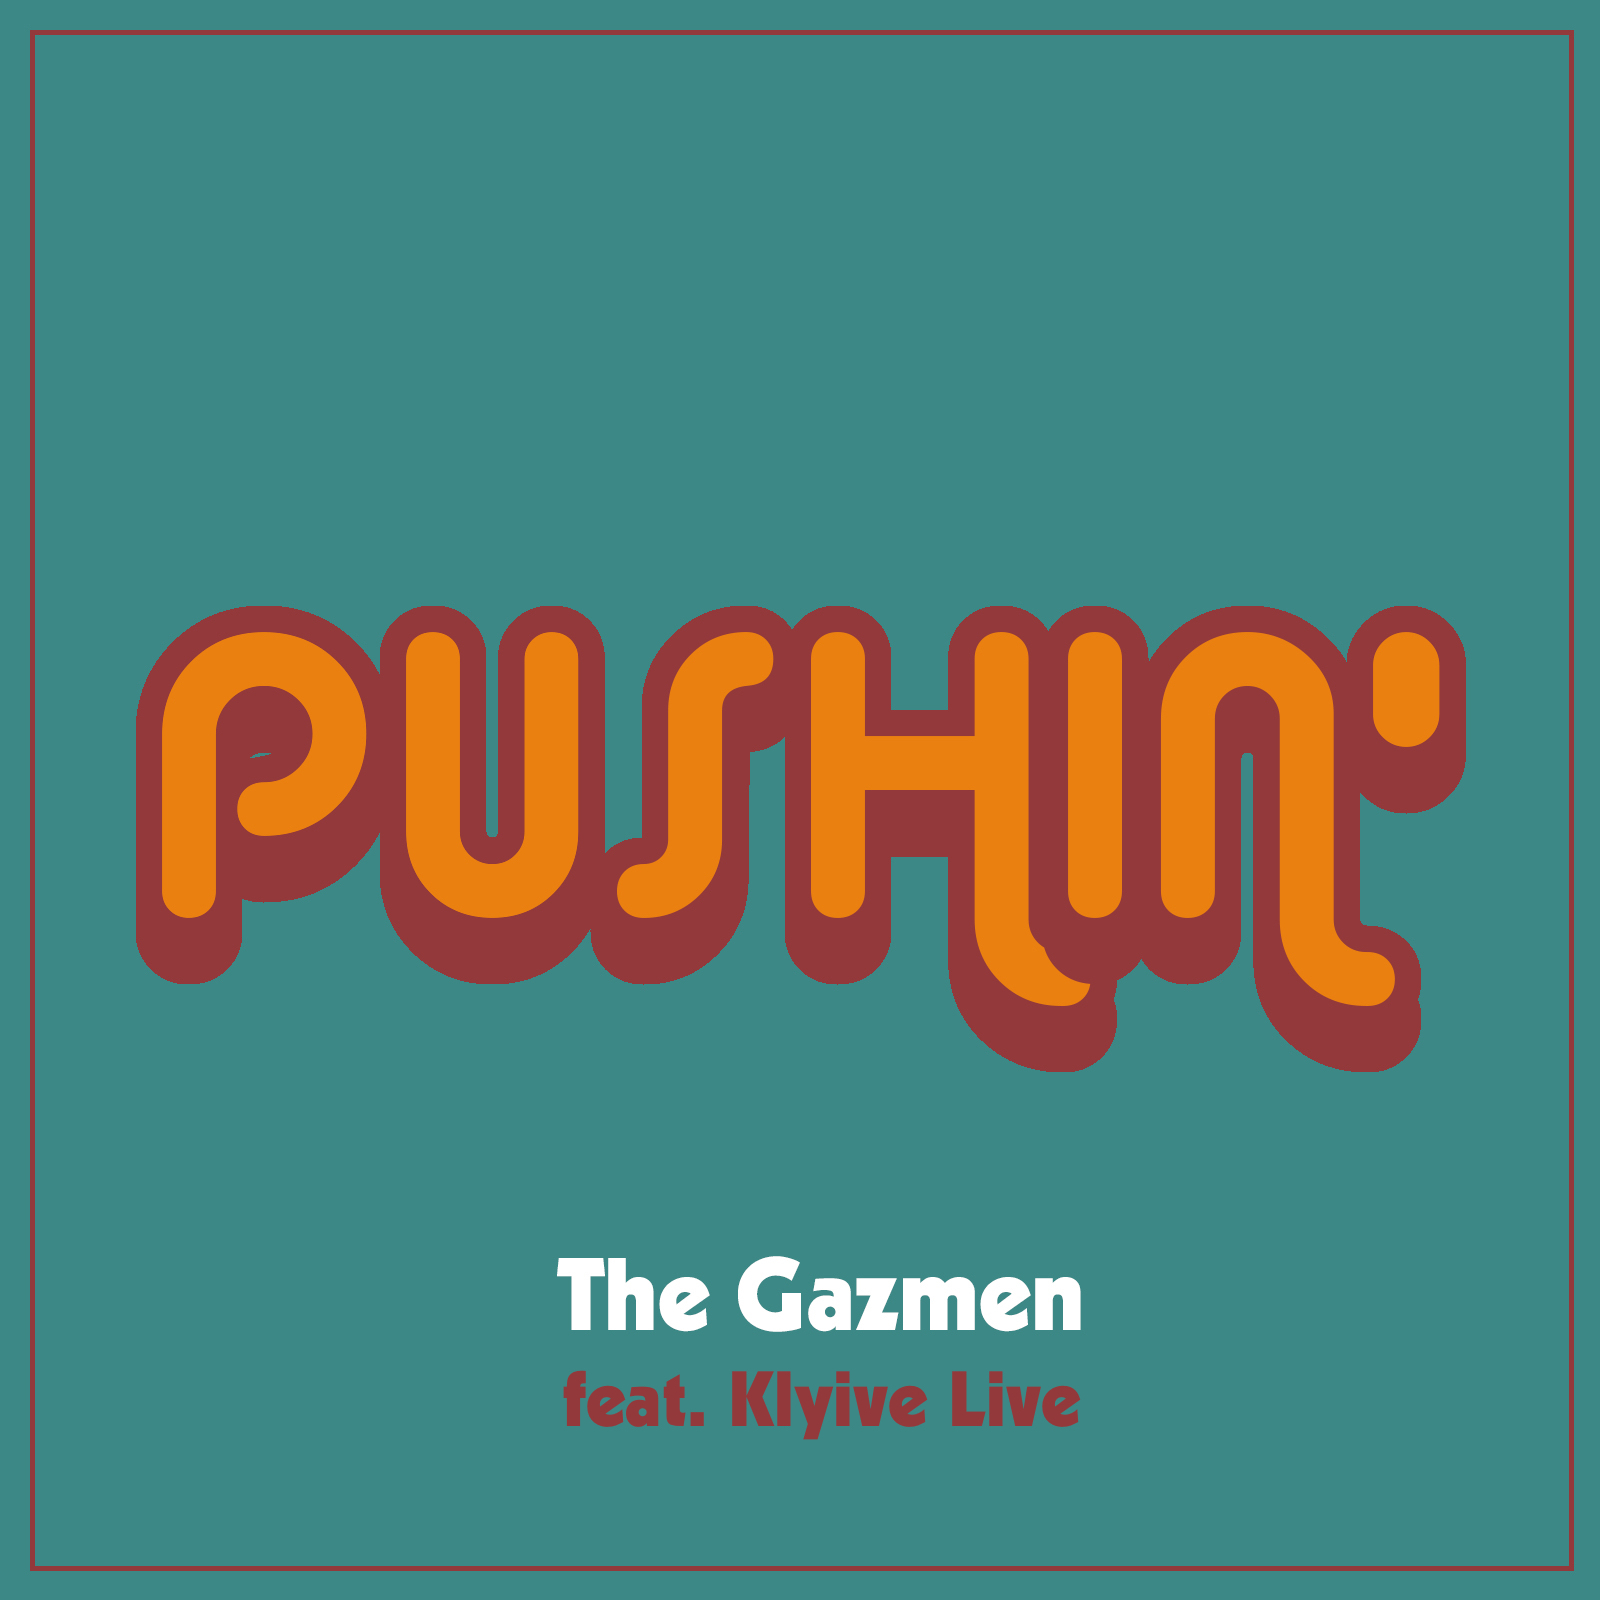 The Gazmen